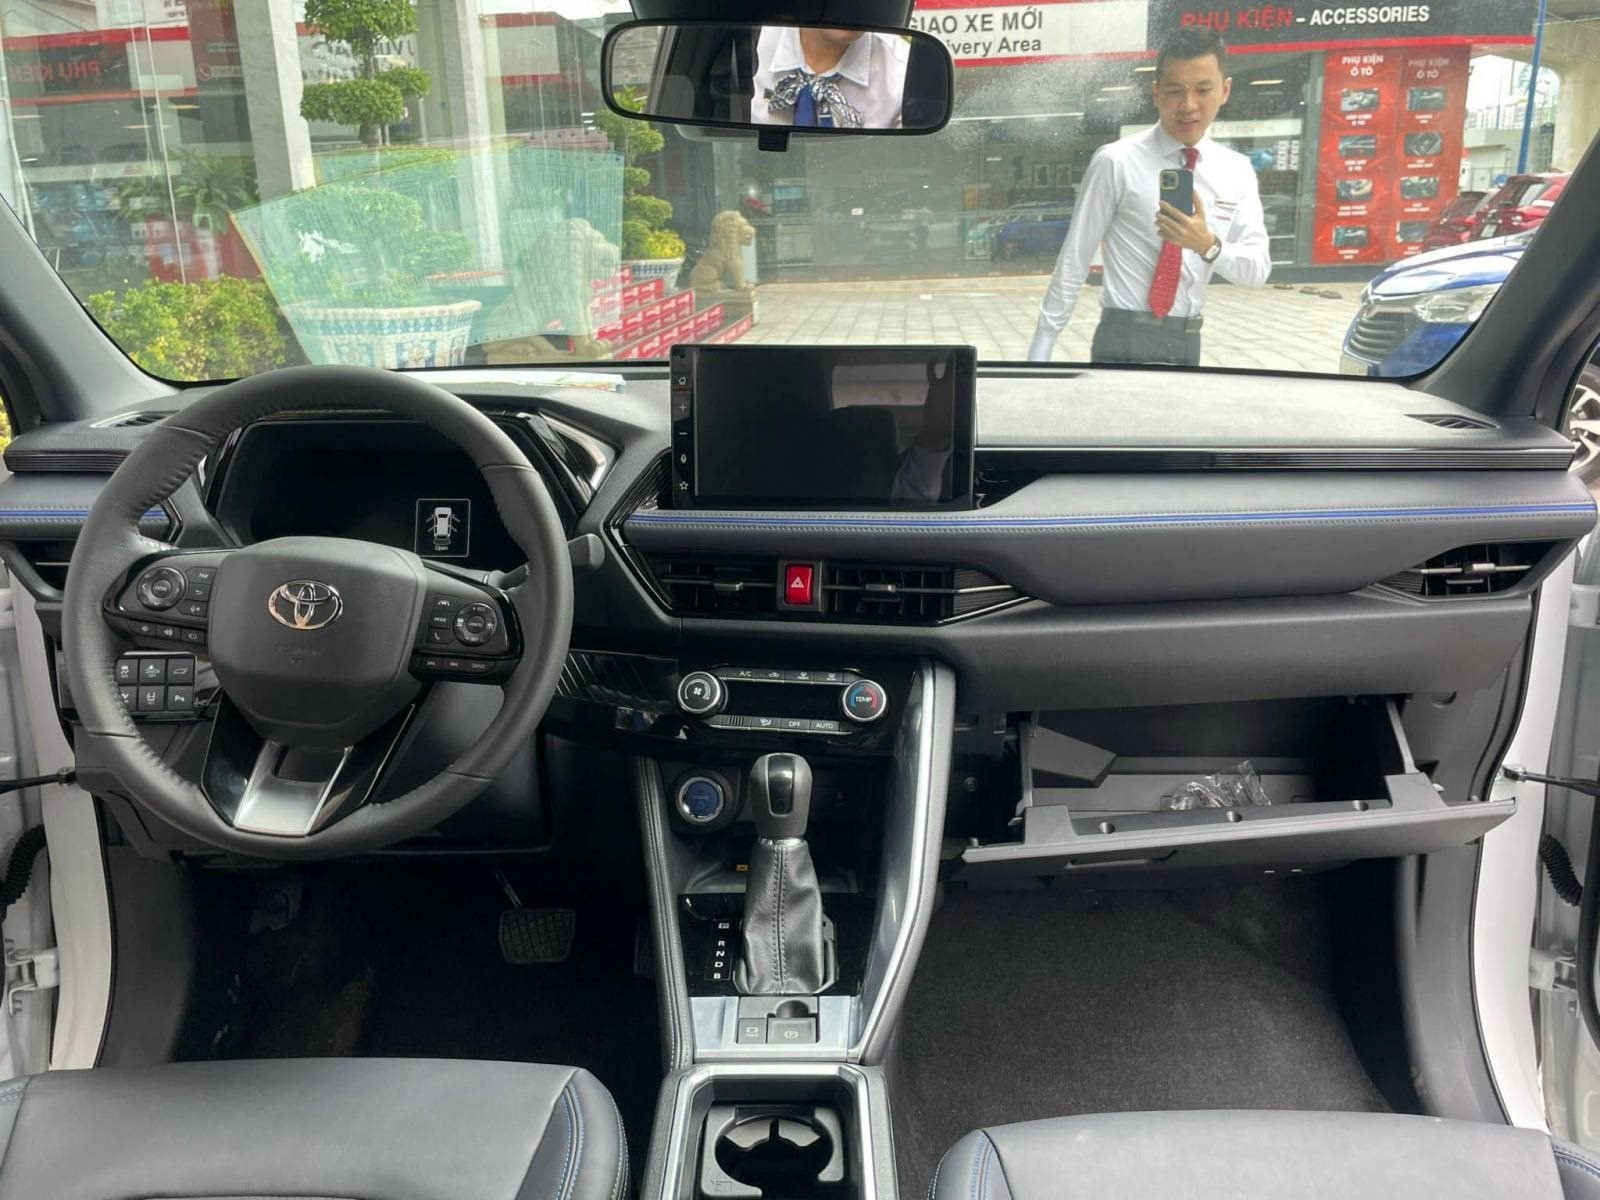 Mới ra mắt 2 tháng, mẫu SUV đô thị từ Toyota đã thành vua phân khúc ở Indonesia, sắp về Việt Nam đấu Hyundai Creta, Kia Seltos - Ảnh 2.